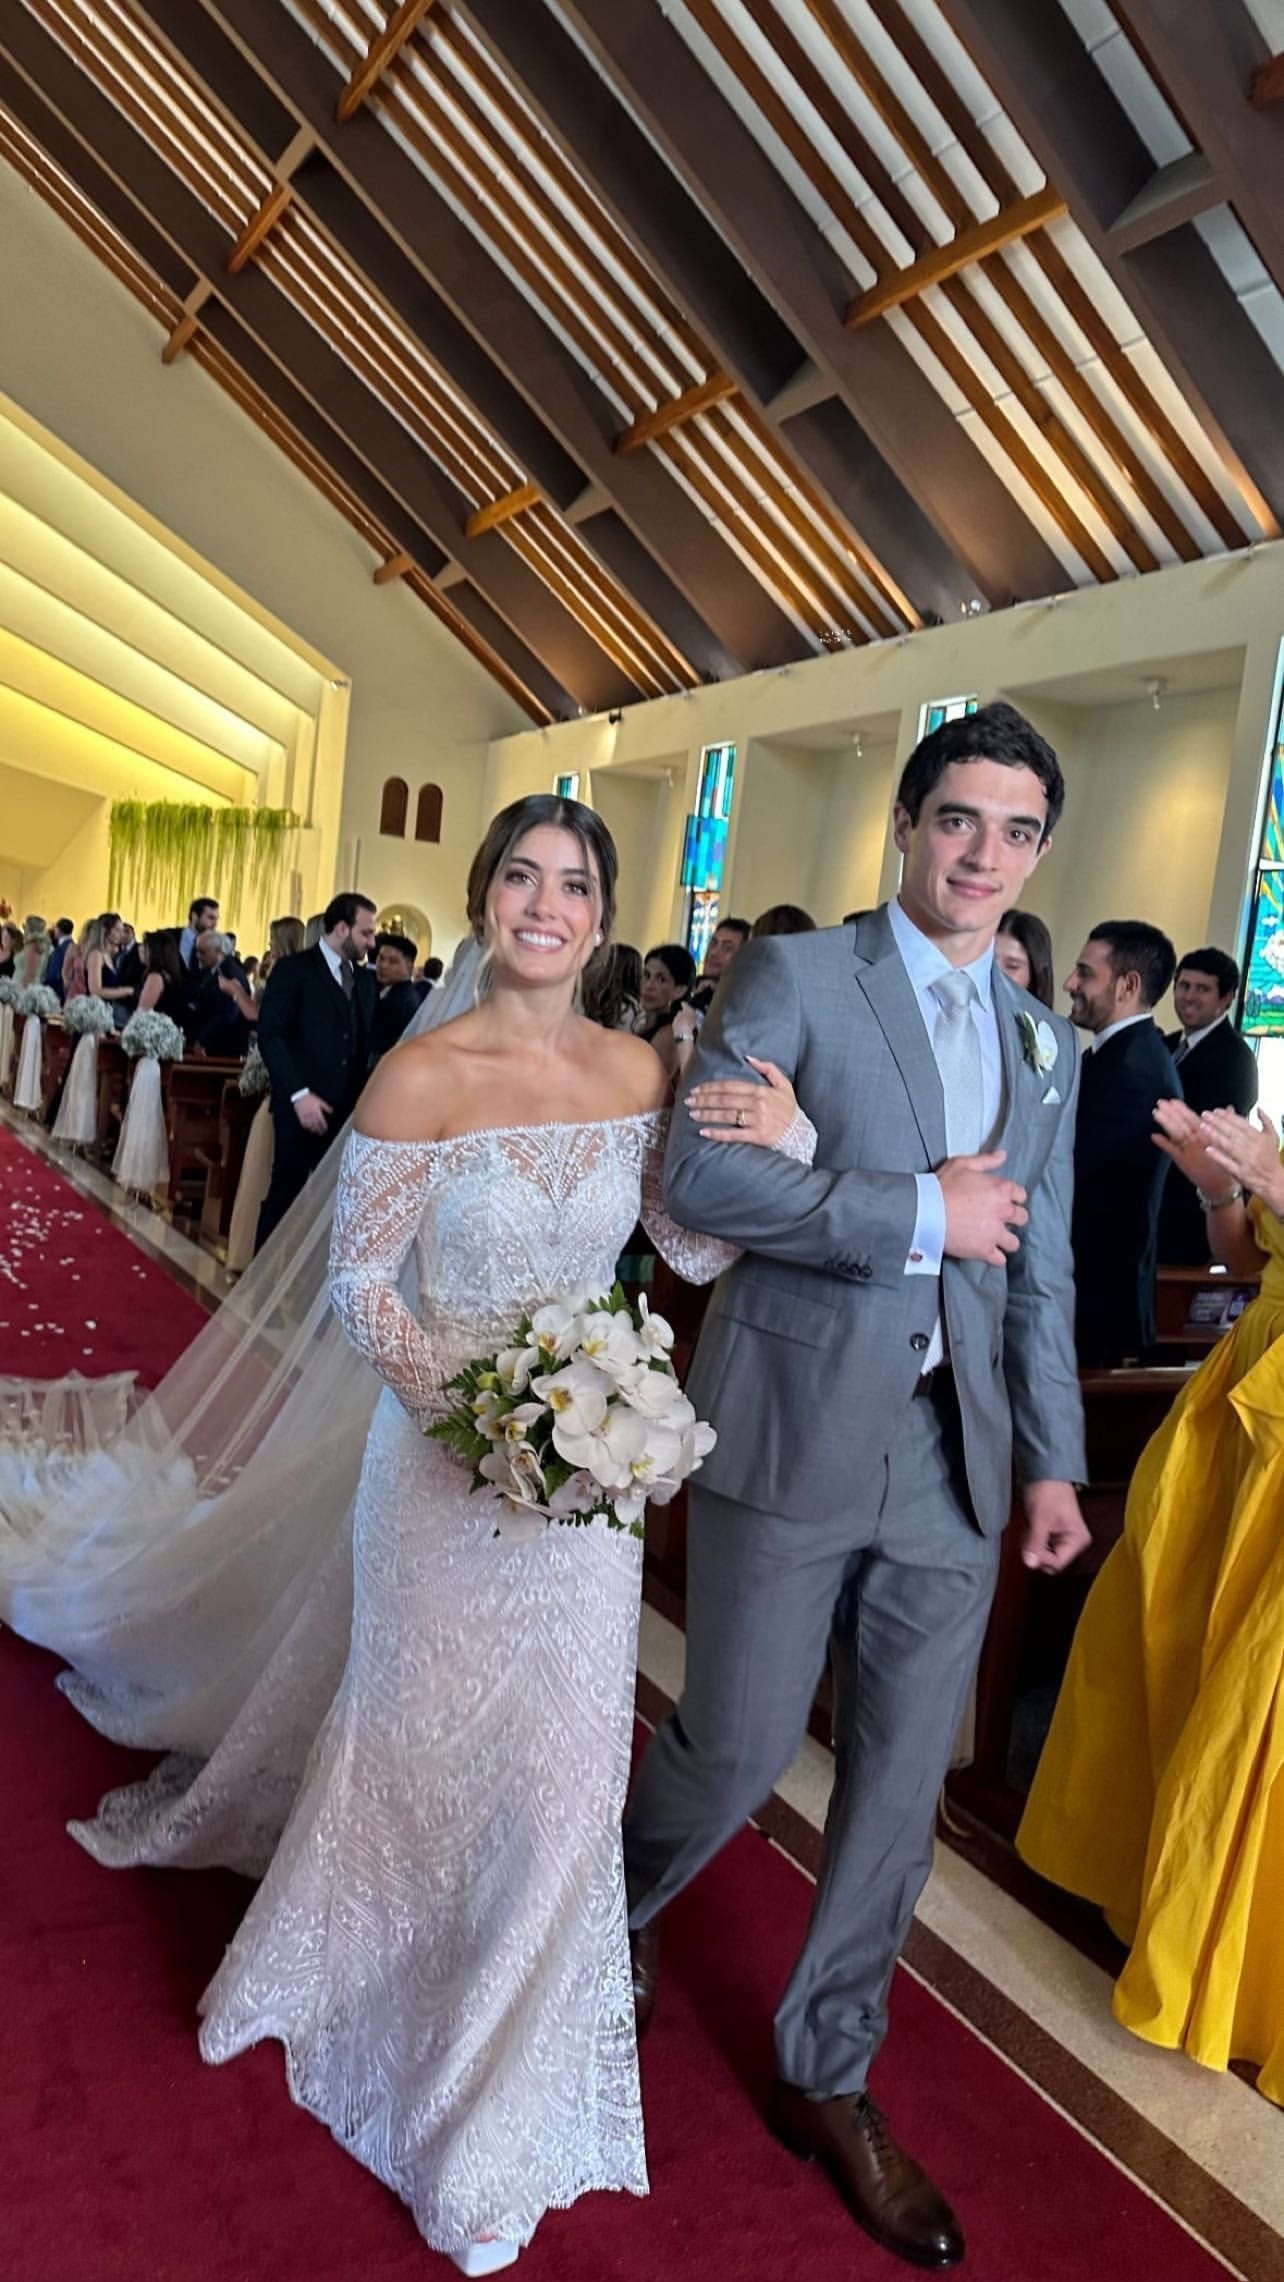 La boda de Mafer Parodi y AlfredoZanatti se realizó el sábado / Instagram